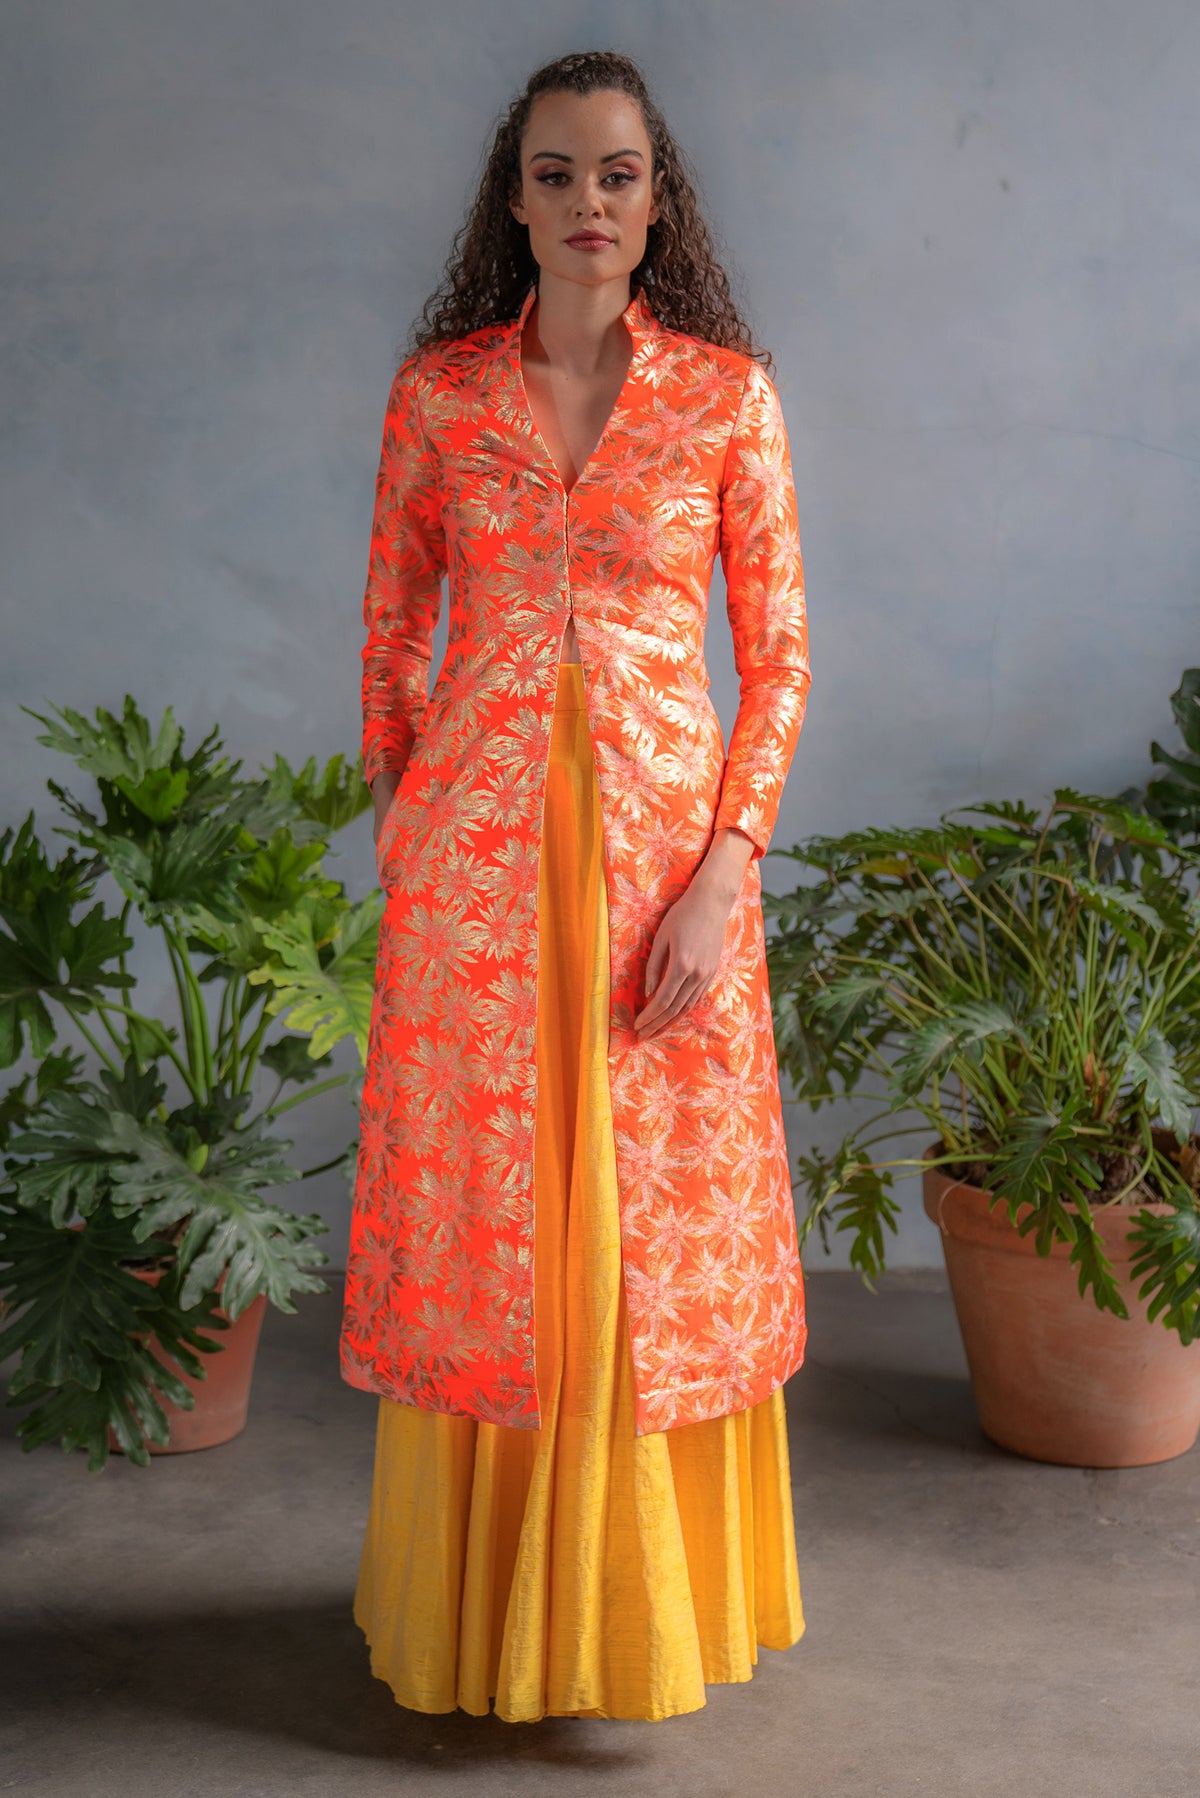 RANI Neon Orange Jacquard Jacket - Front View - Harleen Kaur